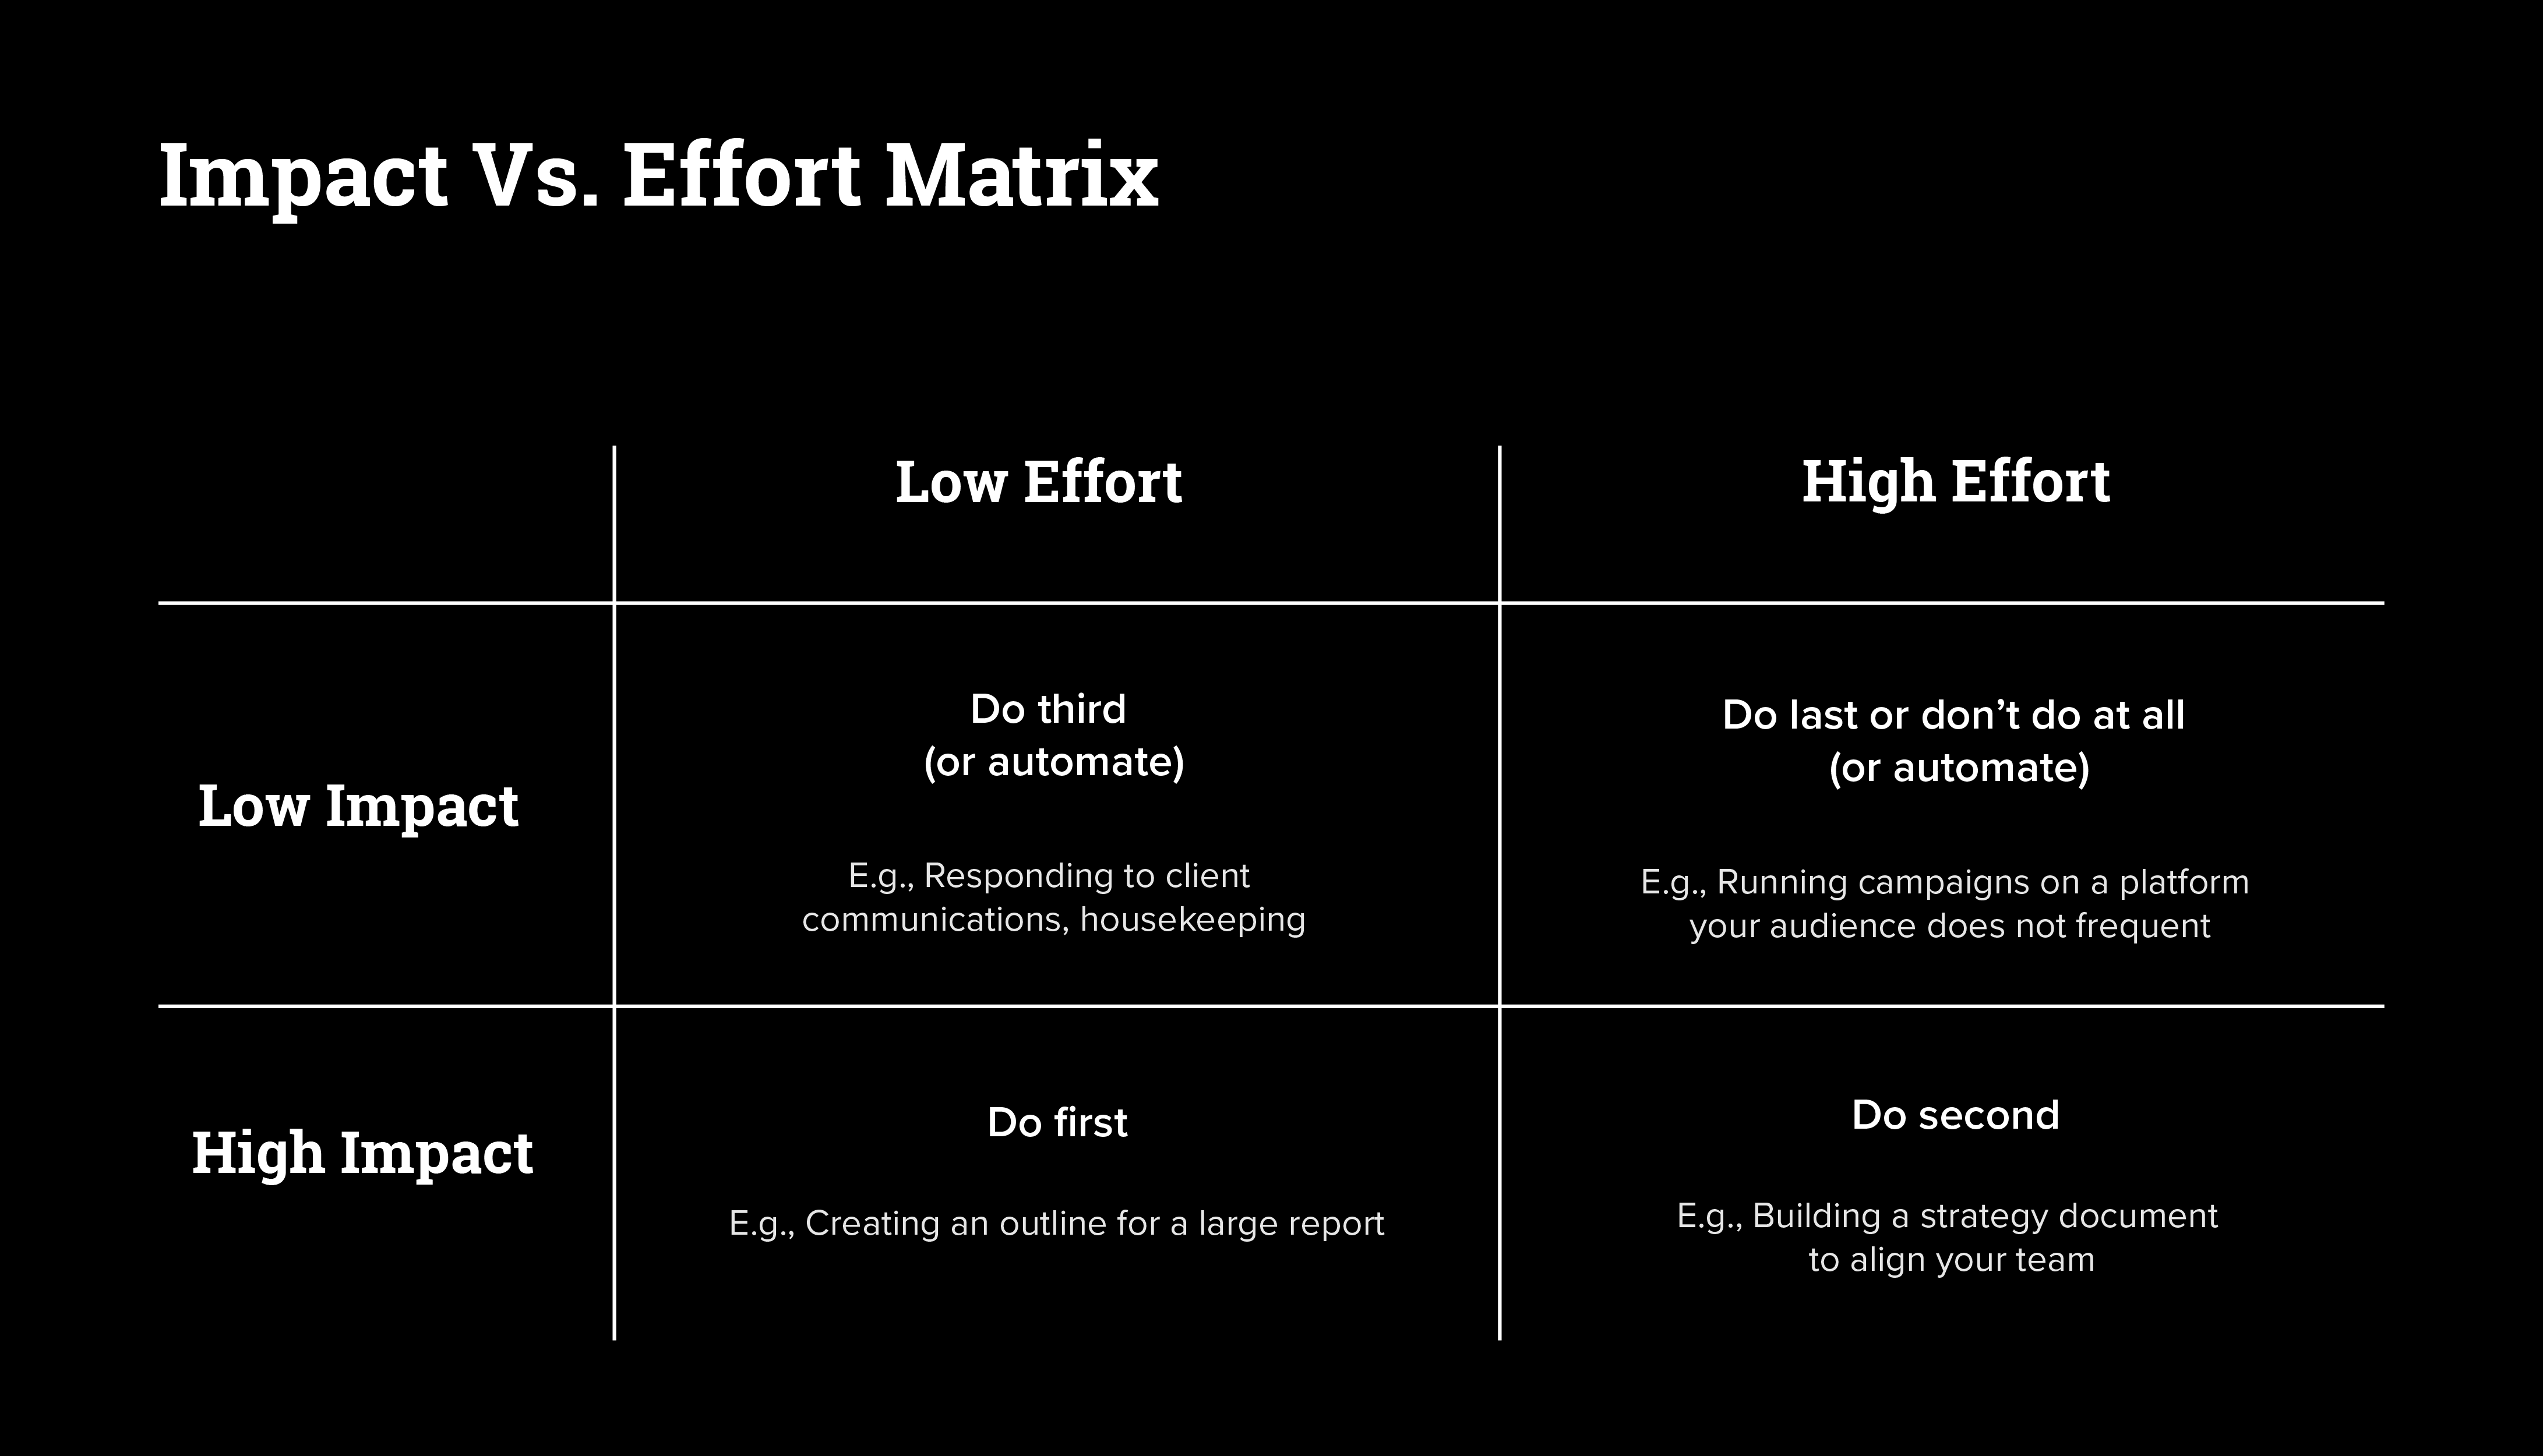 Impact vs. effort matrix